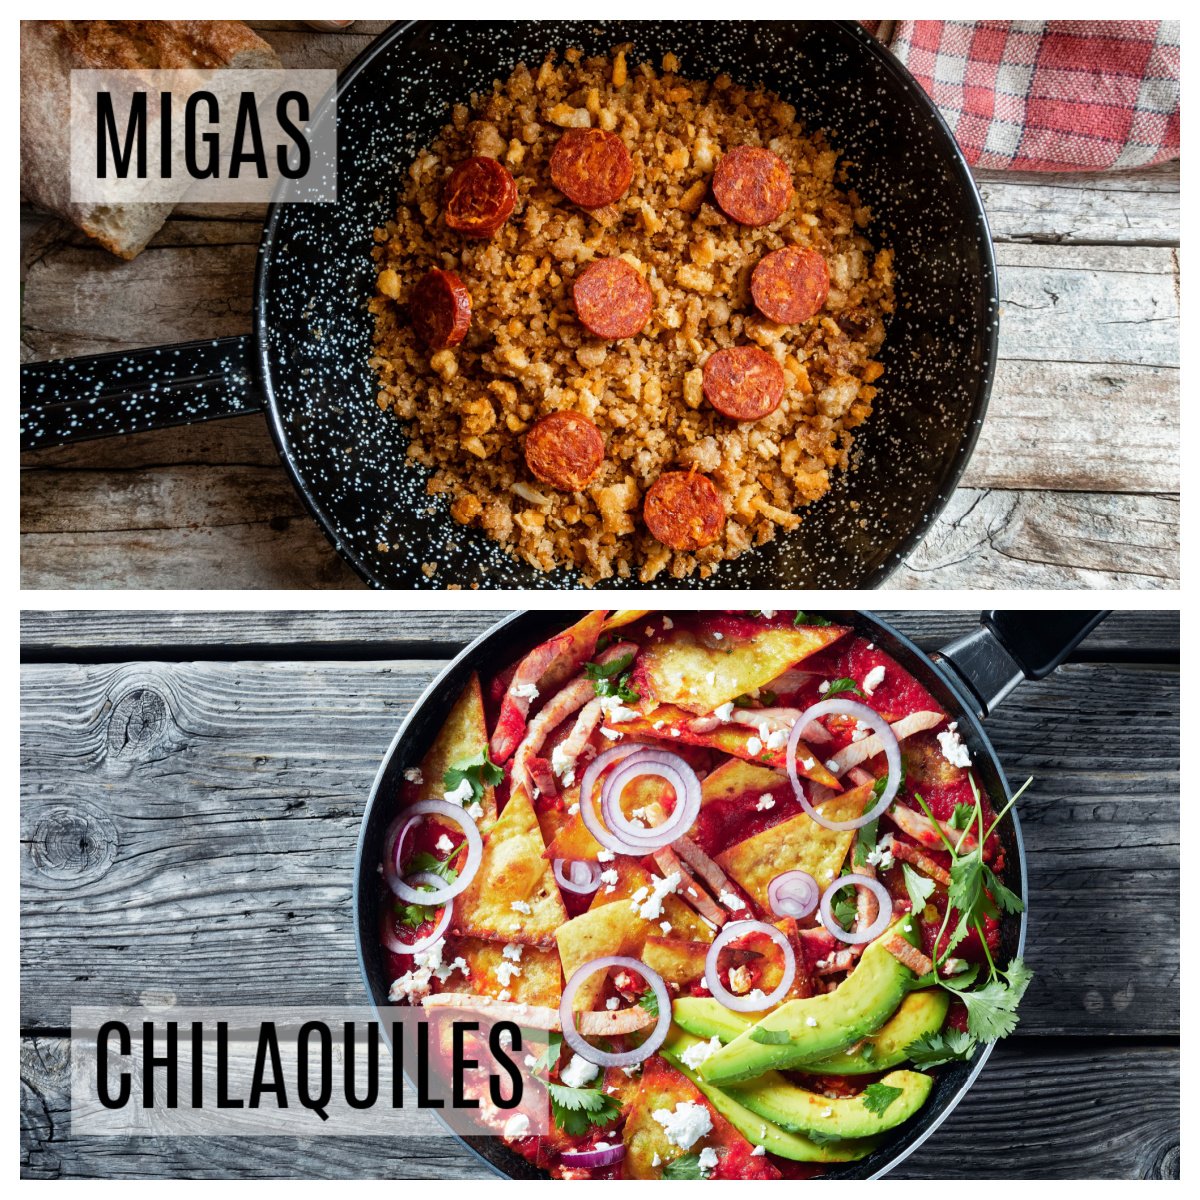 migas vs chilaquiles tex mex breakfasts